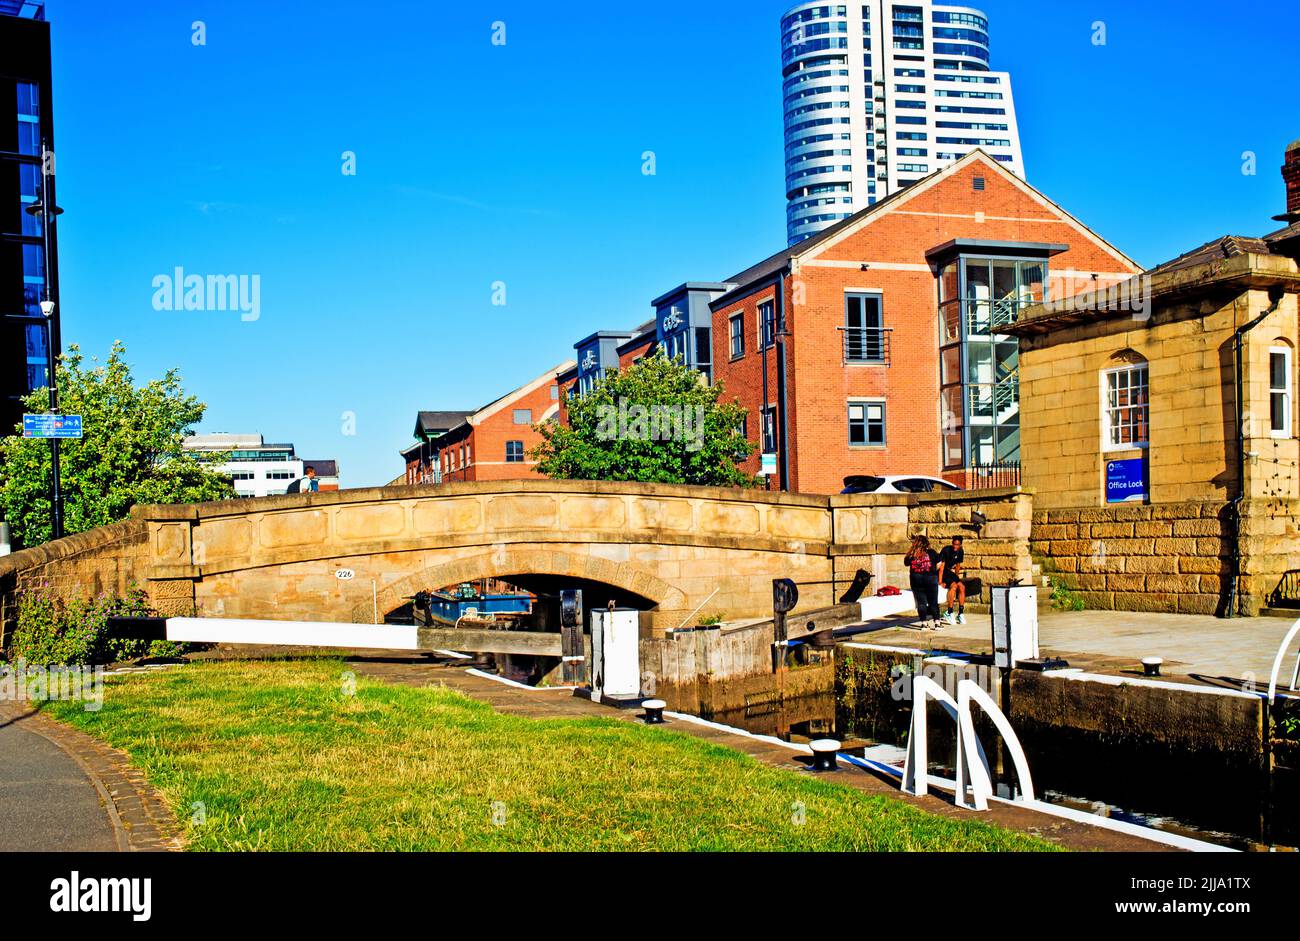 Esclusas en Leeds al canal de Liverpool, Leeds, Inglaterra Foto de stock